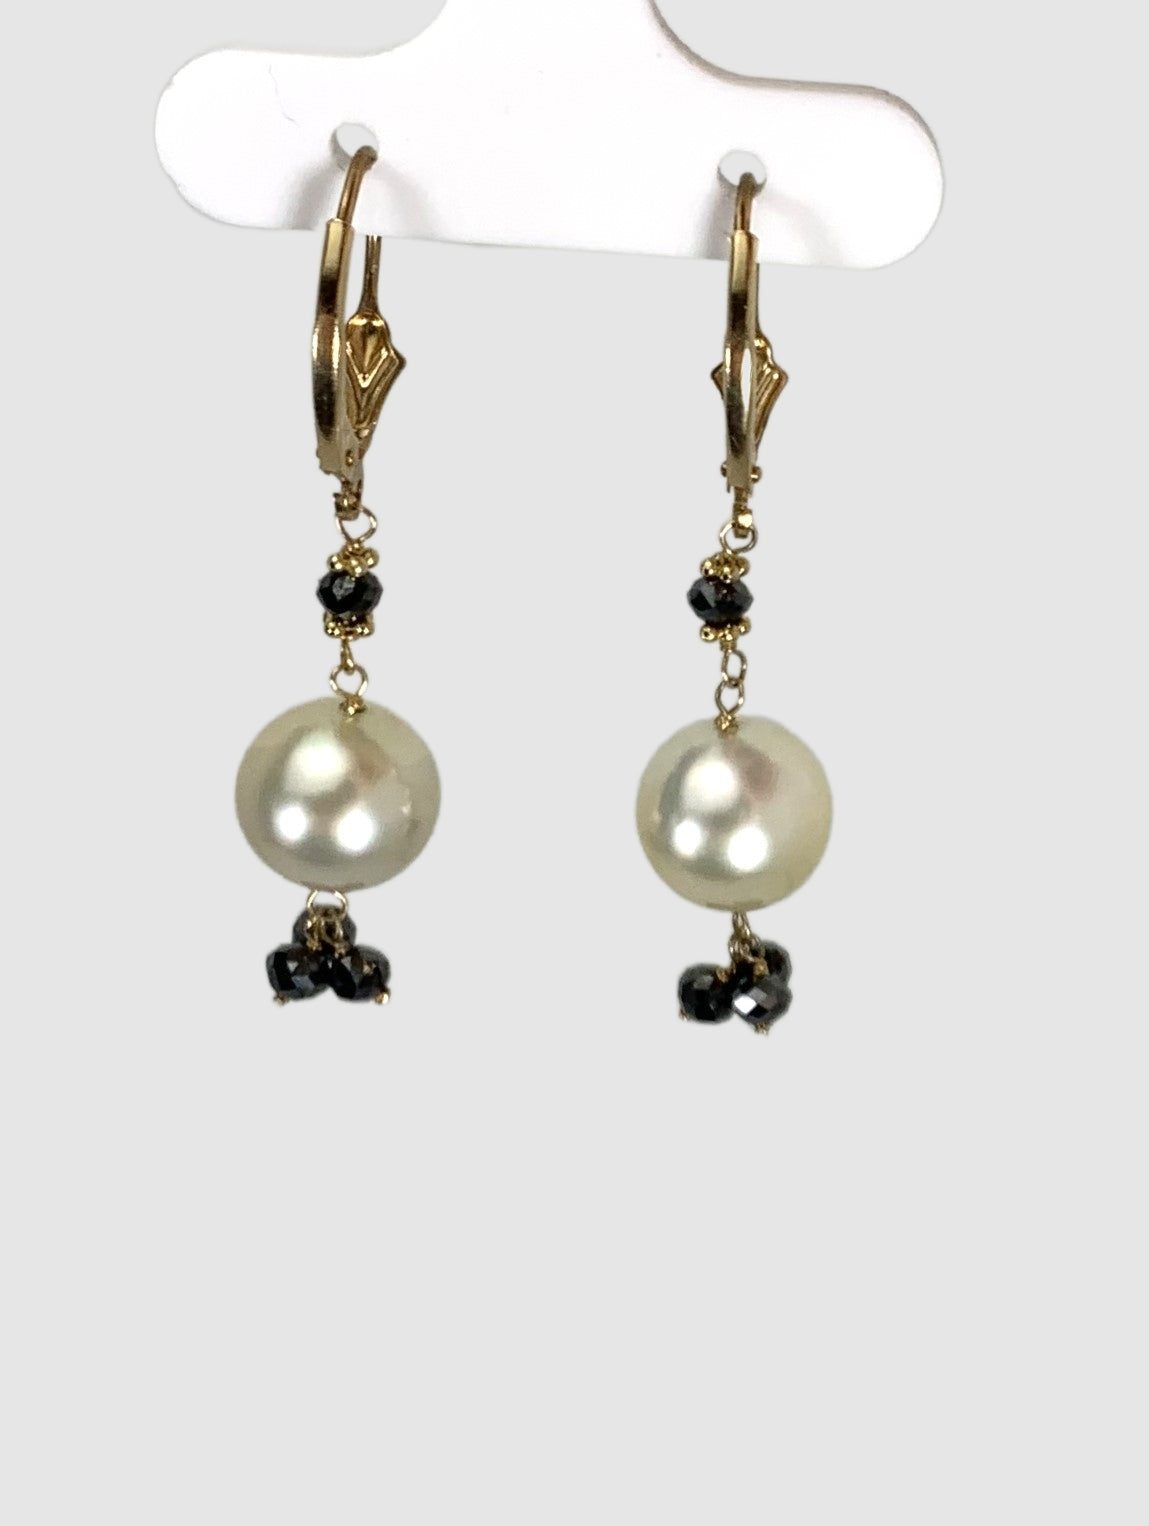 Pearl and Black Diamond Tassel Drop Earrings in 14KY -  EAR-024-TSPRLDIA14Y-LG-WHBLK 1.80ctw